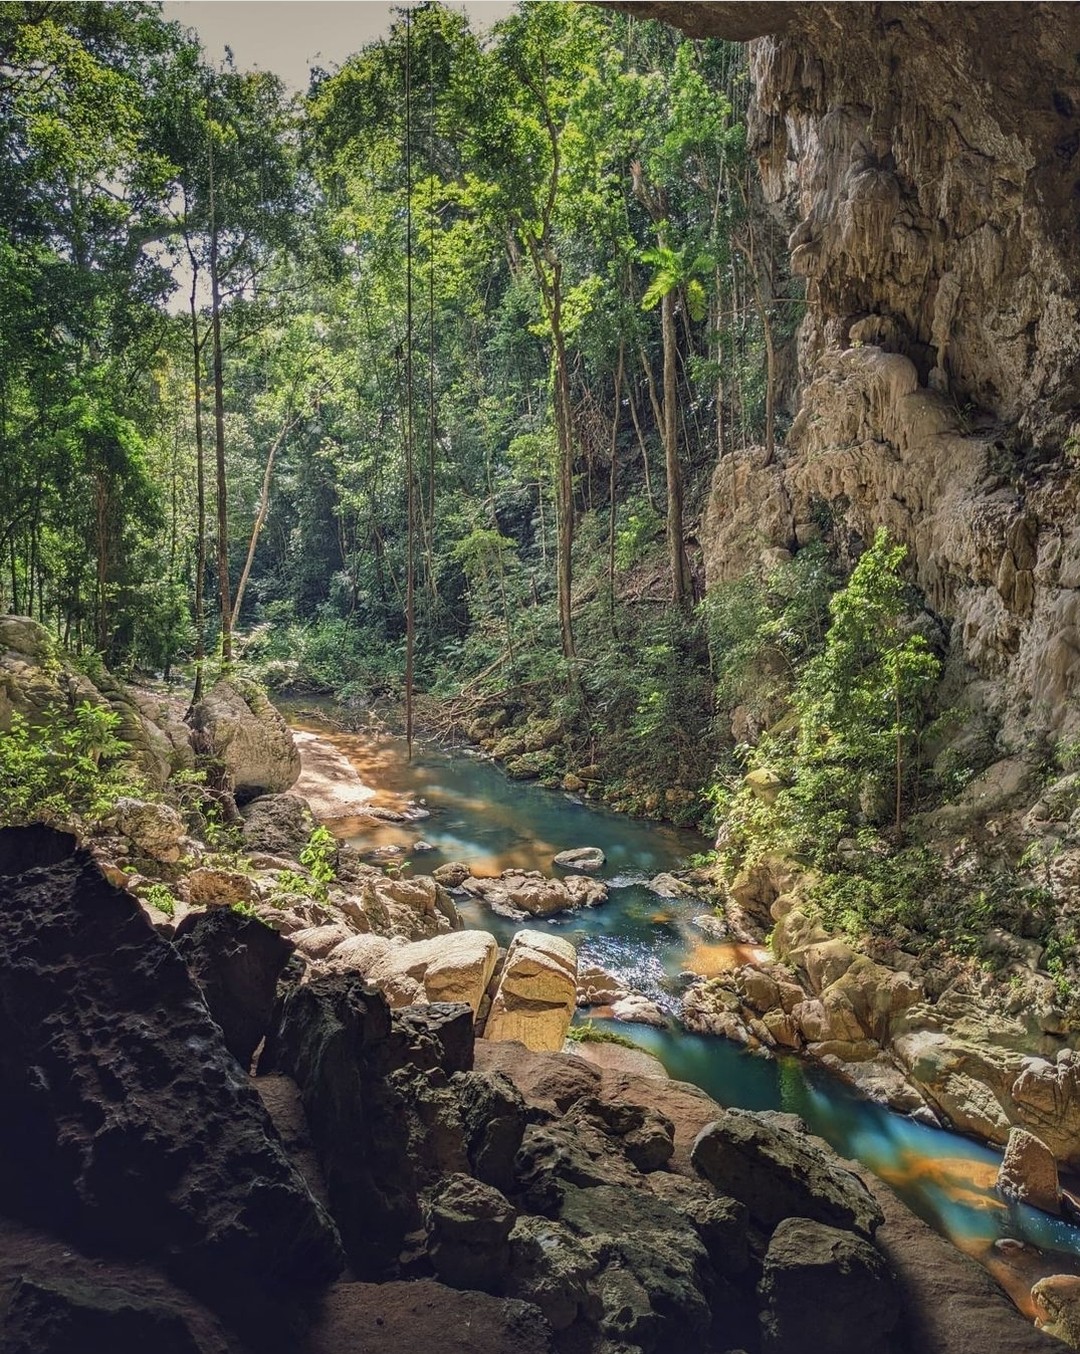 Der Westen von Belize beherbergt ein ausgedehntes Höhlennetz, das einst von den alten Maya als Ort für Gottesdienste, Rituale und Bestattungen genutzt wurde. Nehmen Sie auf jeden Fall eine der vielen Höhlen in Ihre Reiseroute ins Landesinnere auf. #travelbelize📸: @wanderesswithastory